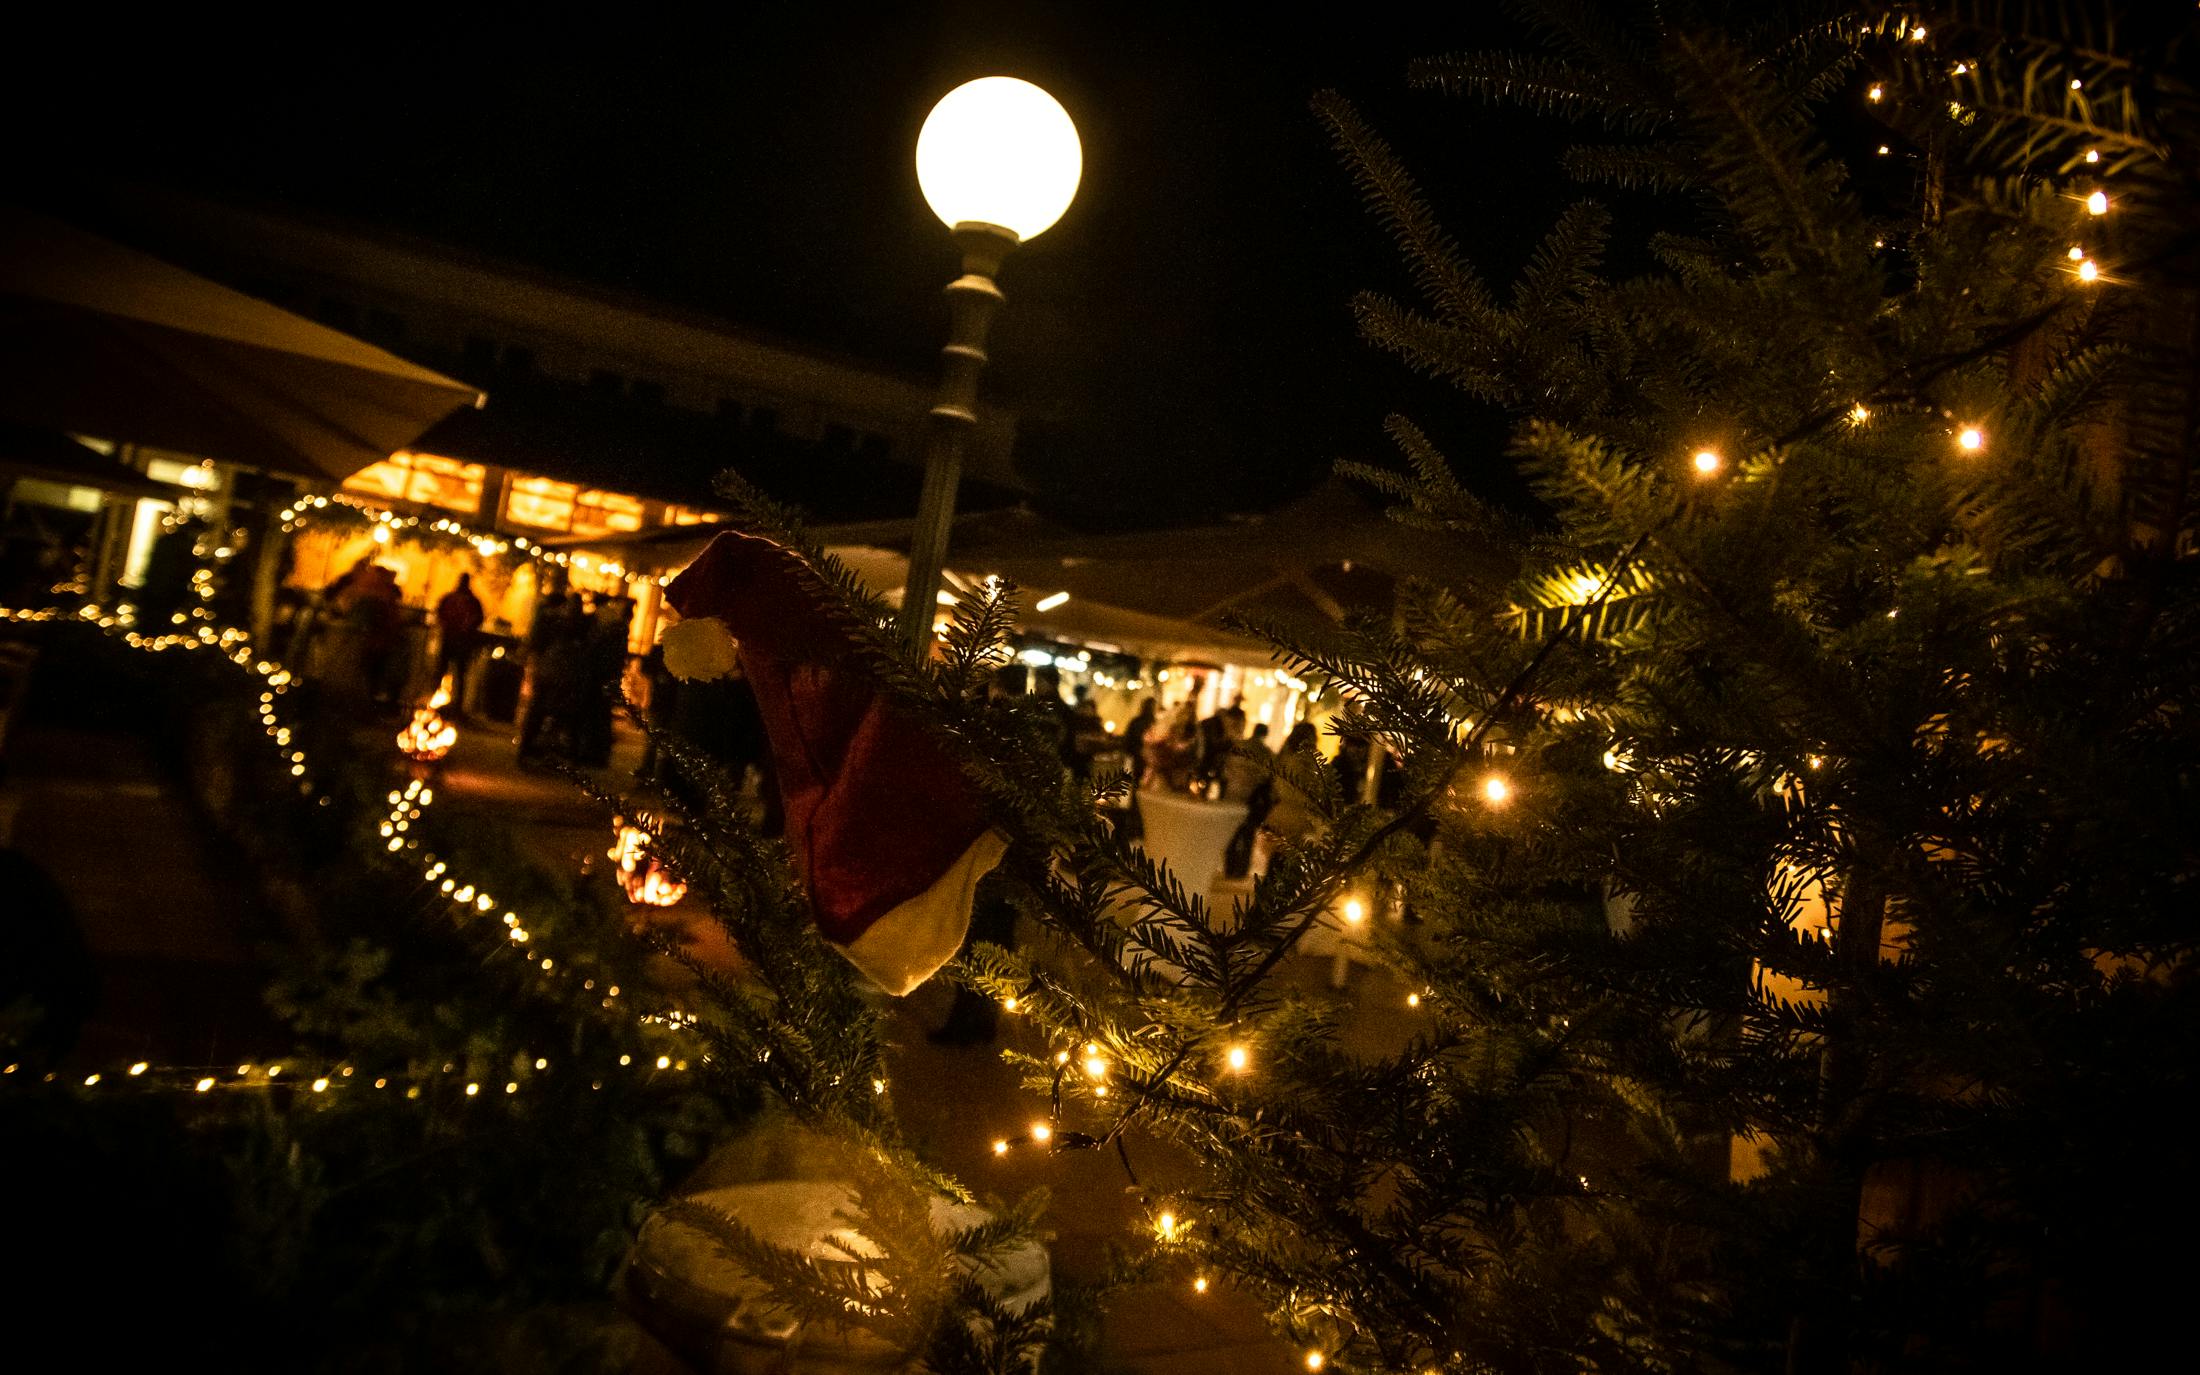 Stimmungsvoll beleuchtet: Das Kulinarische Weihnachtsdorf vom 19. bis zum 21. Dezember auf der Herrenalber Kurhaus-Terrasse. ©Tourismus und Stadtmarketing Bad Herrenalb